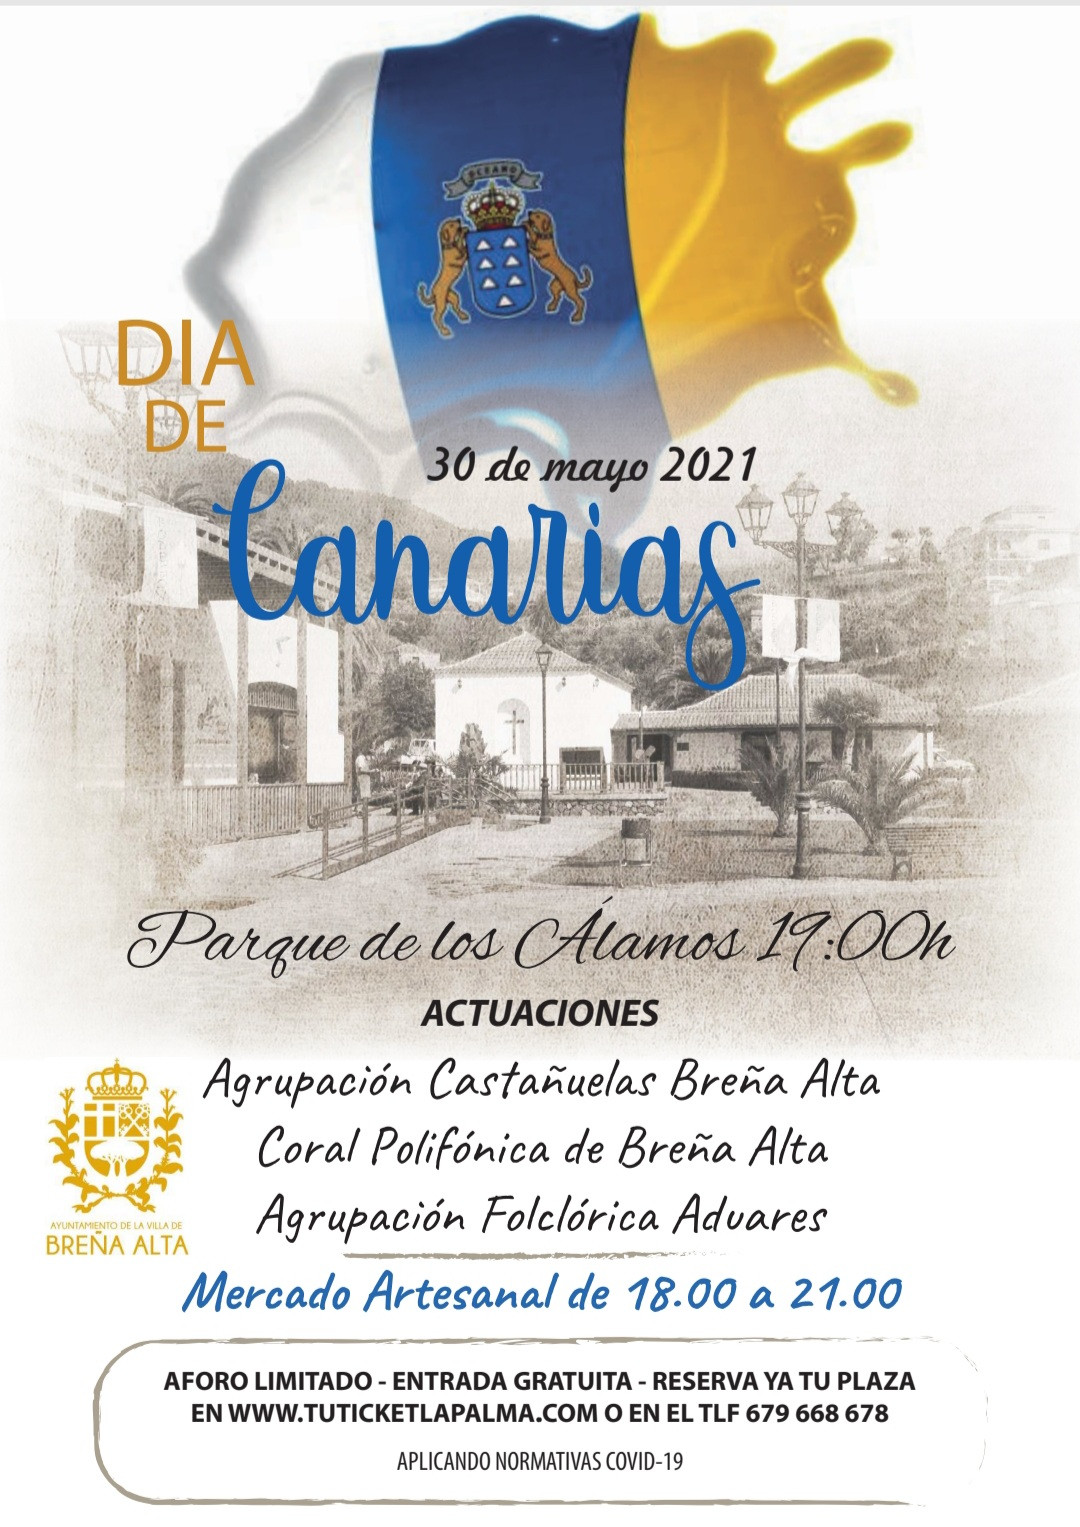 Imagen del cartel promocional del Du00eda de Canarias en Breu00f1a Alta